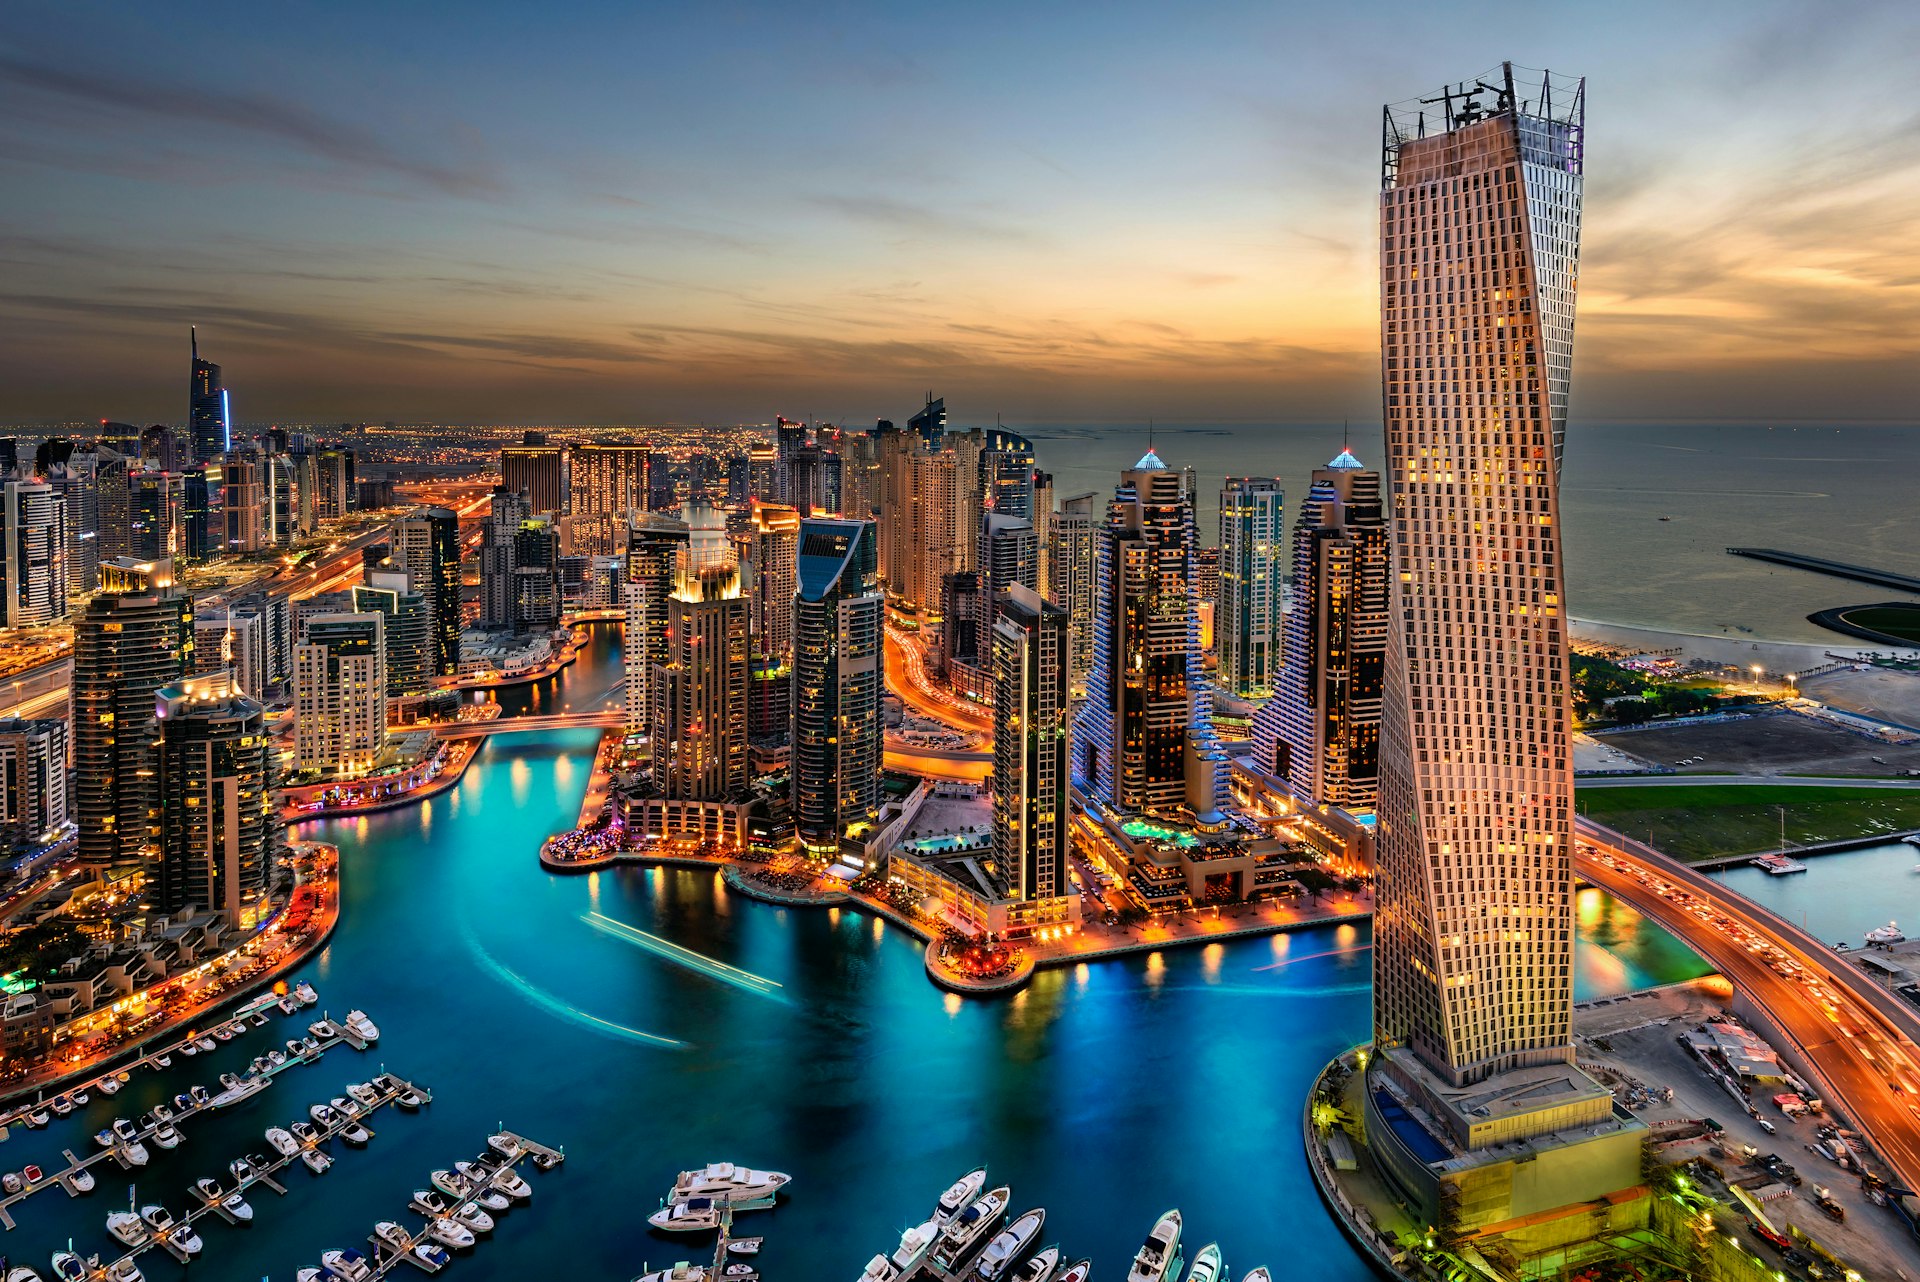 En långexponerad bild av Dubai Marina, Förenade Arabemiraten i skymningen, tagen från högt upp i en av de många skyskraporna.  Det ligger massor av båtar som ligger till kaj i marinan, gatorna är upplysta liksom de olika skyskraporna. 